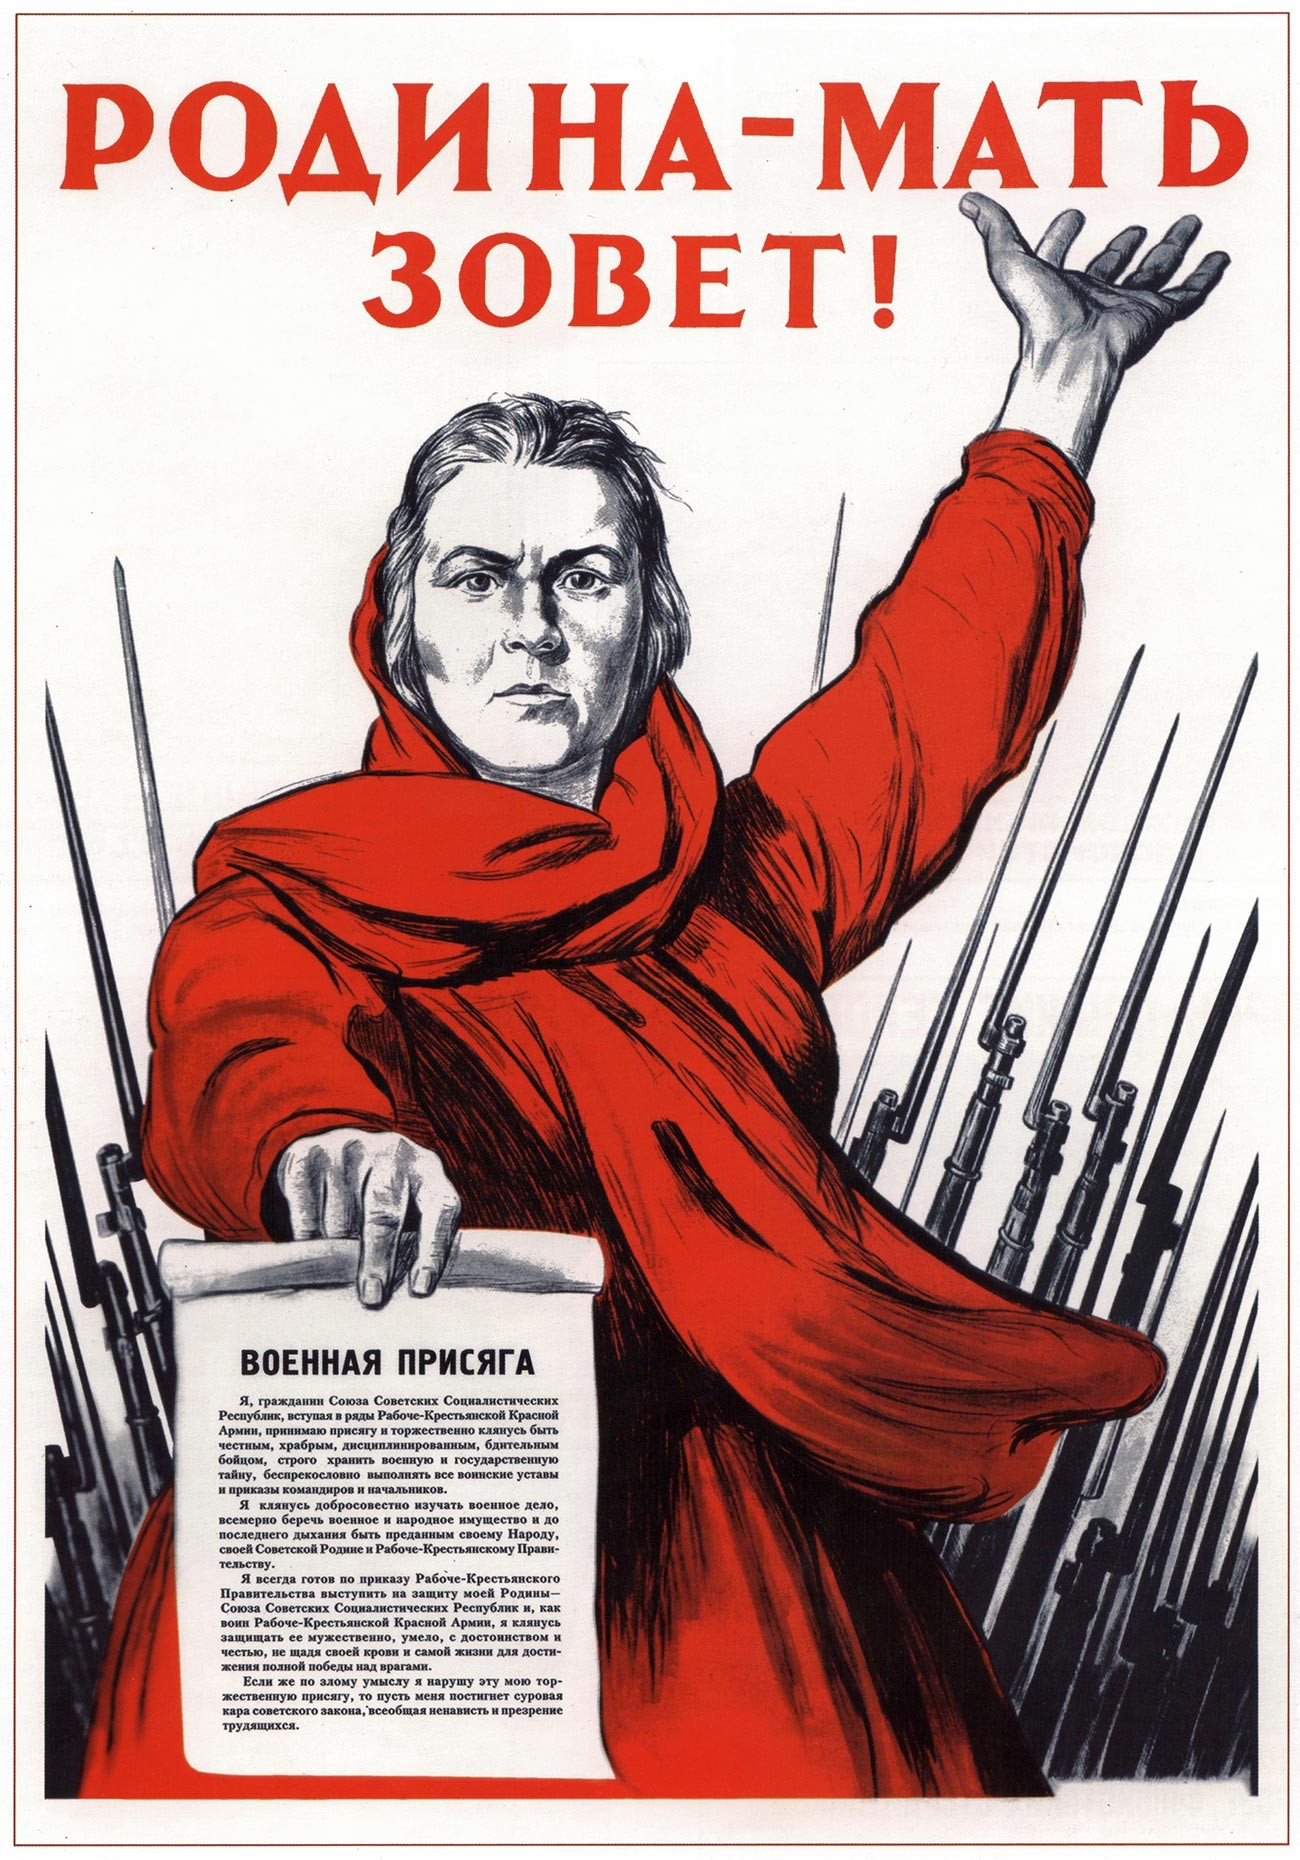 „Das Mutterland ruft!“ ist ein sowjetisches Propagandaplakat aus dem Jahr  1941